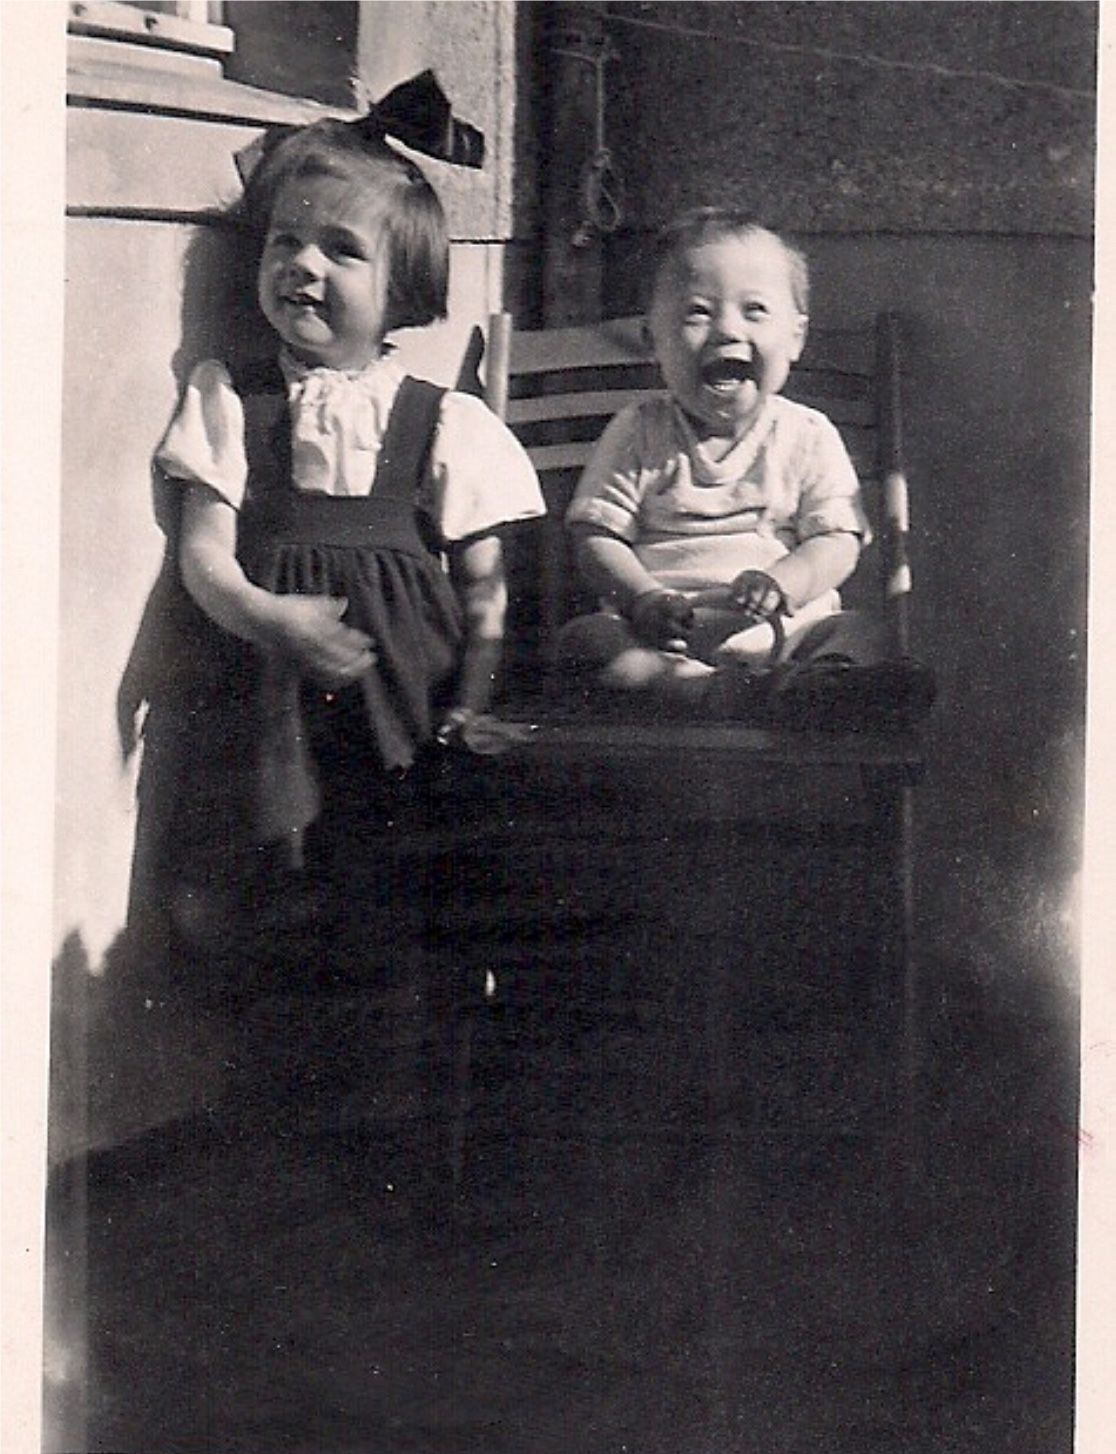 Opferbiographie: Wolfgang Götz Zerban, Foto aus dem Jahr 1943 mit seiner Schwester Marianne